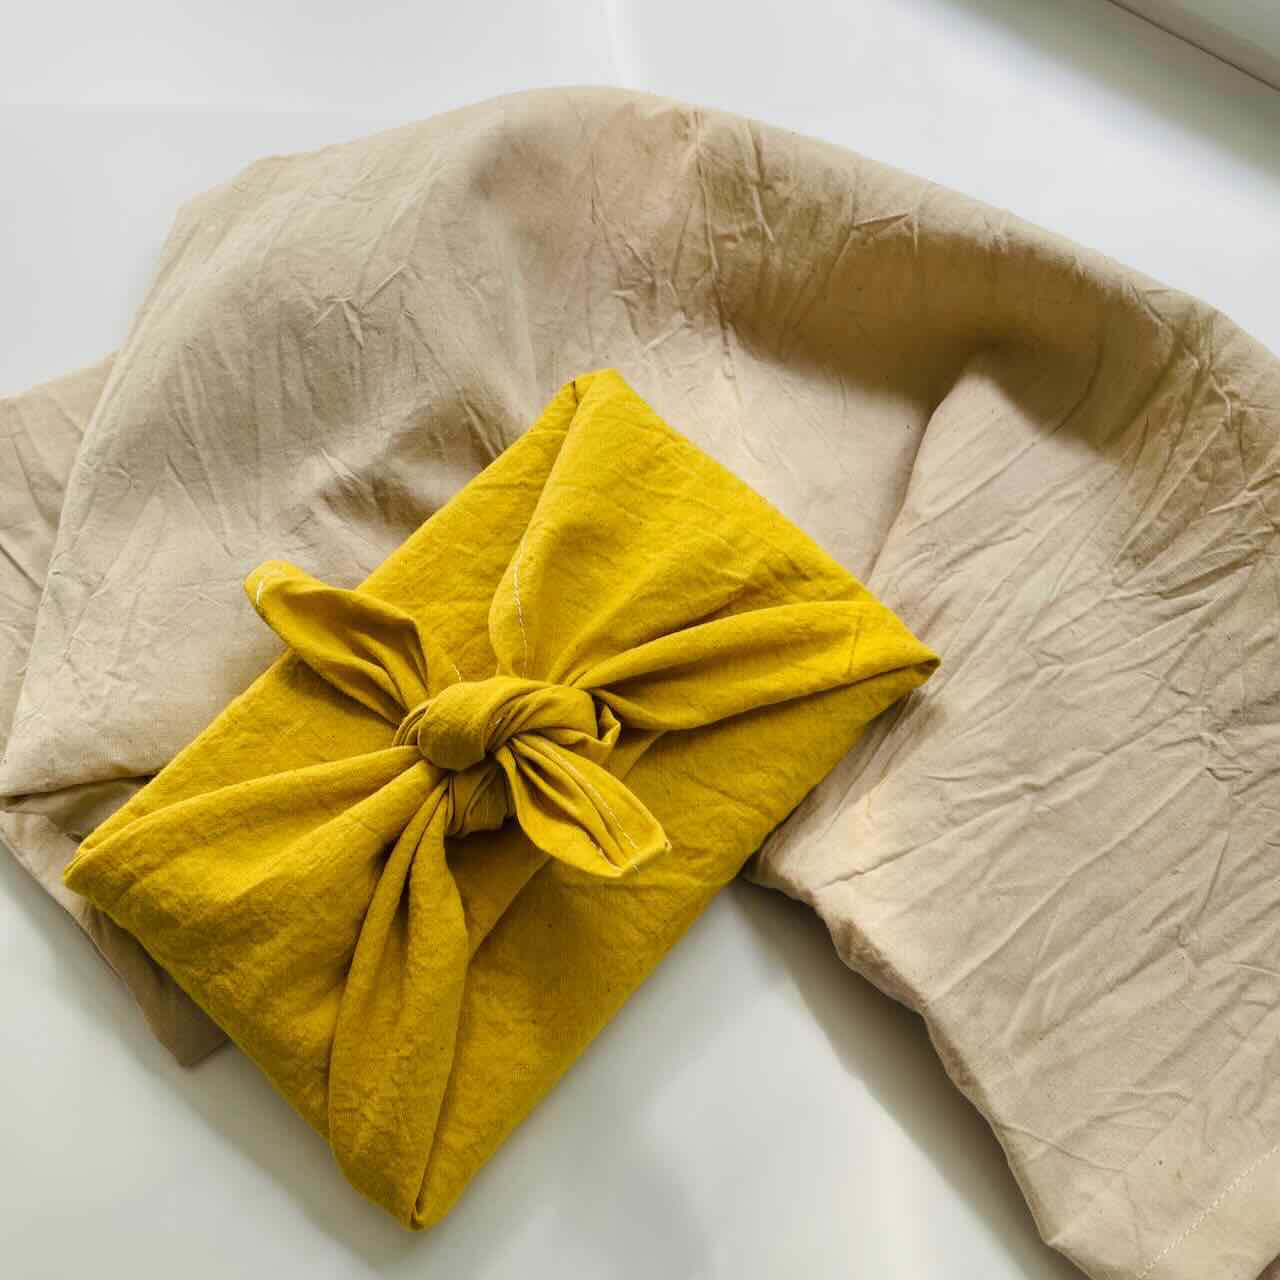 Furoshiki Reusable Gift Wrapping Cloth Small (19" x 19"): Dijon